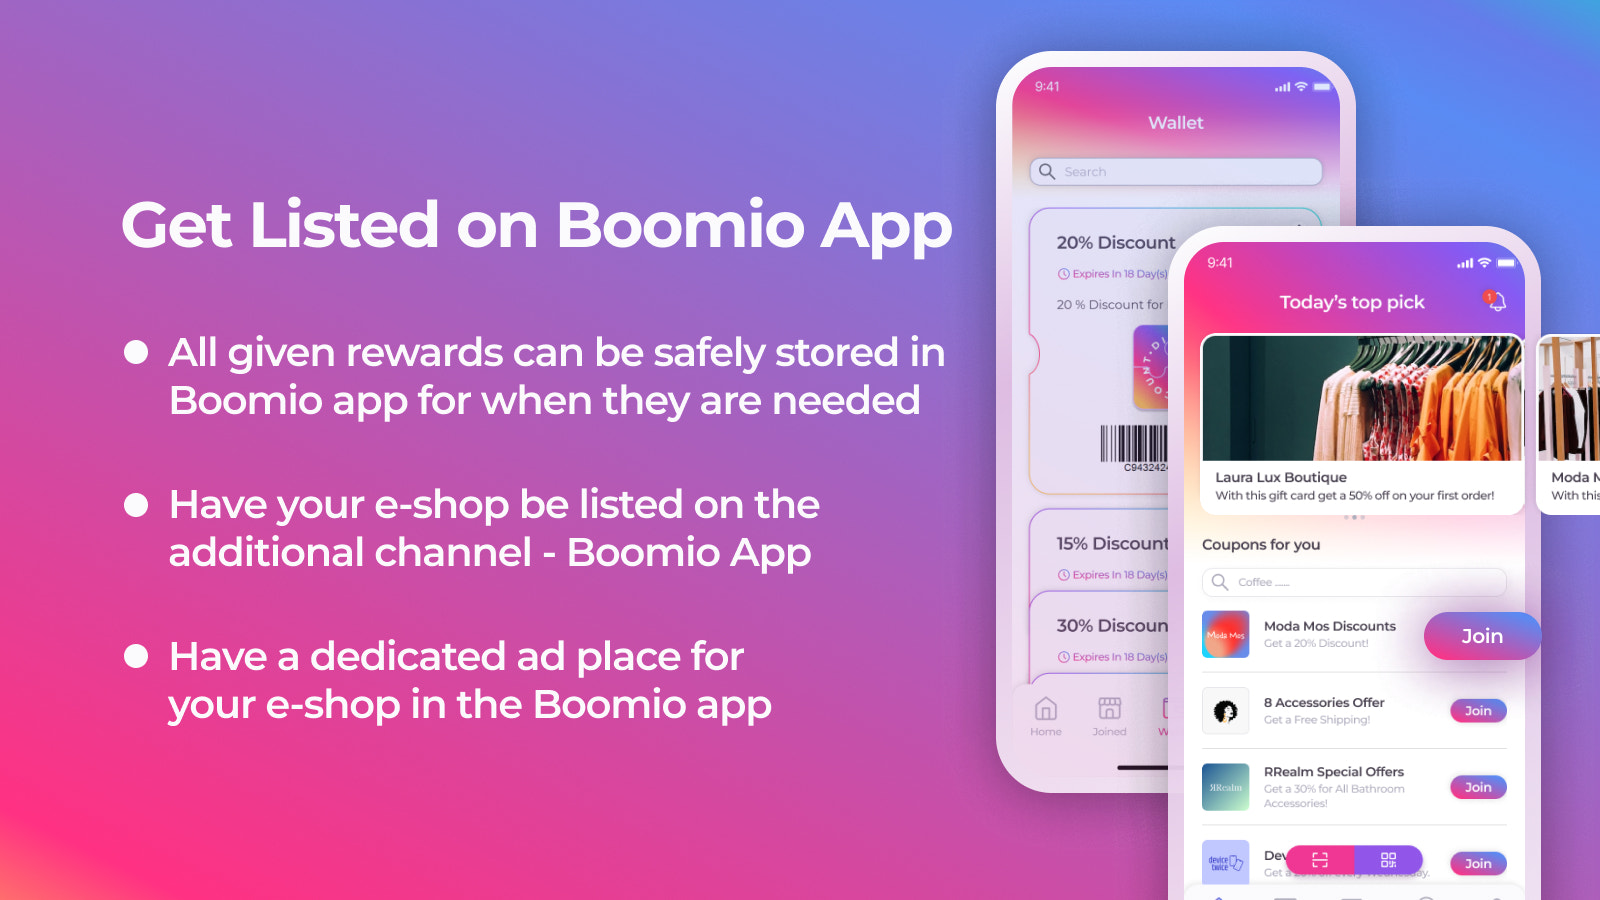 在Boomio应用中列出您的电子商店。